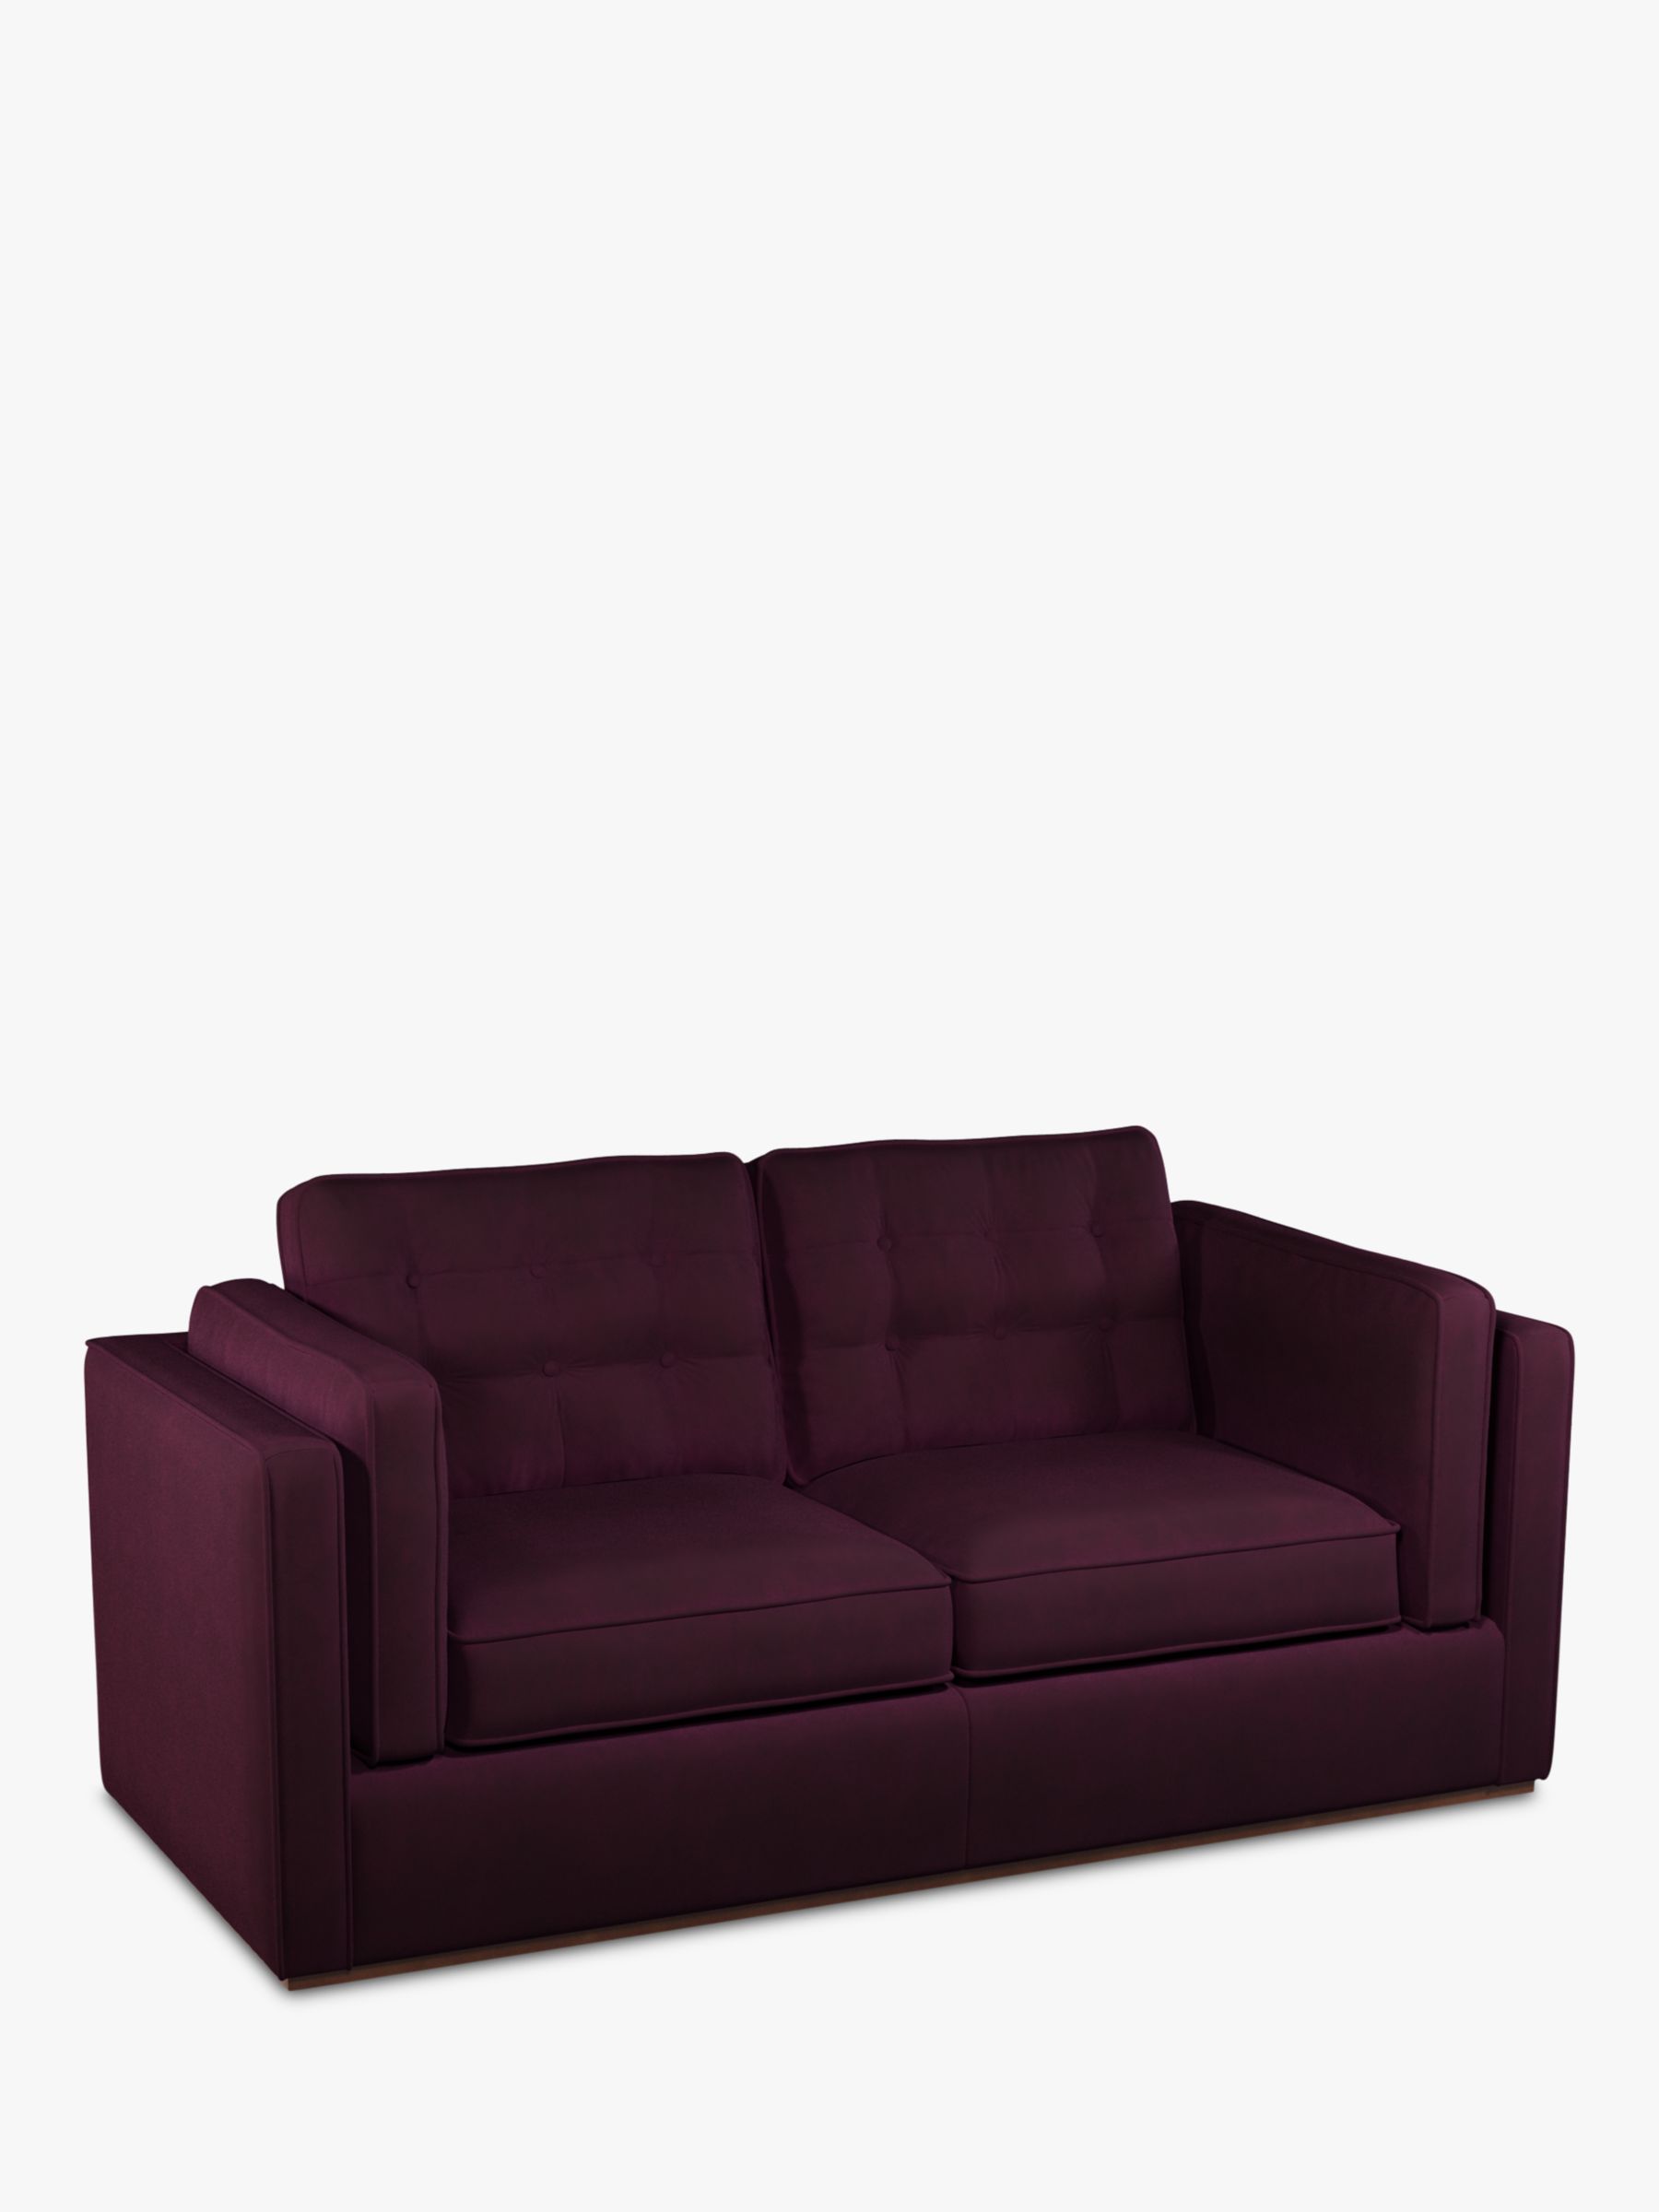 Lyon Range, John Lewis + Swoon Lyon Medium 2 Seater Sofa Bed, Damson Purple Velvet